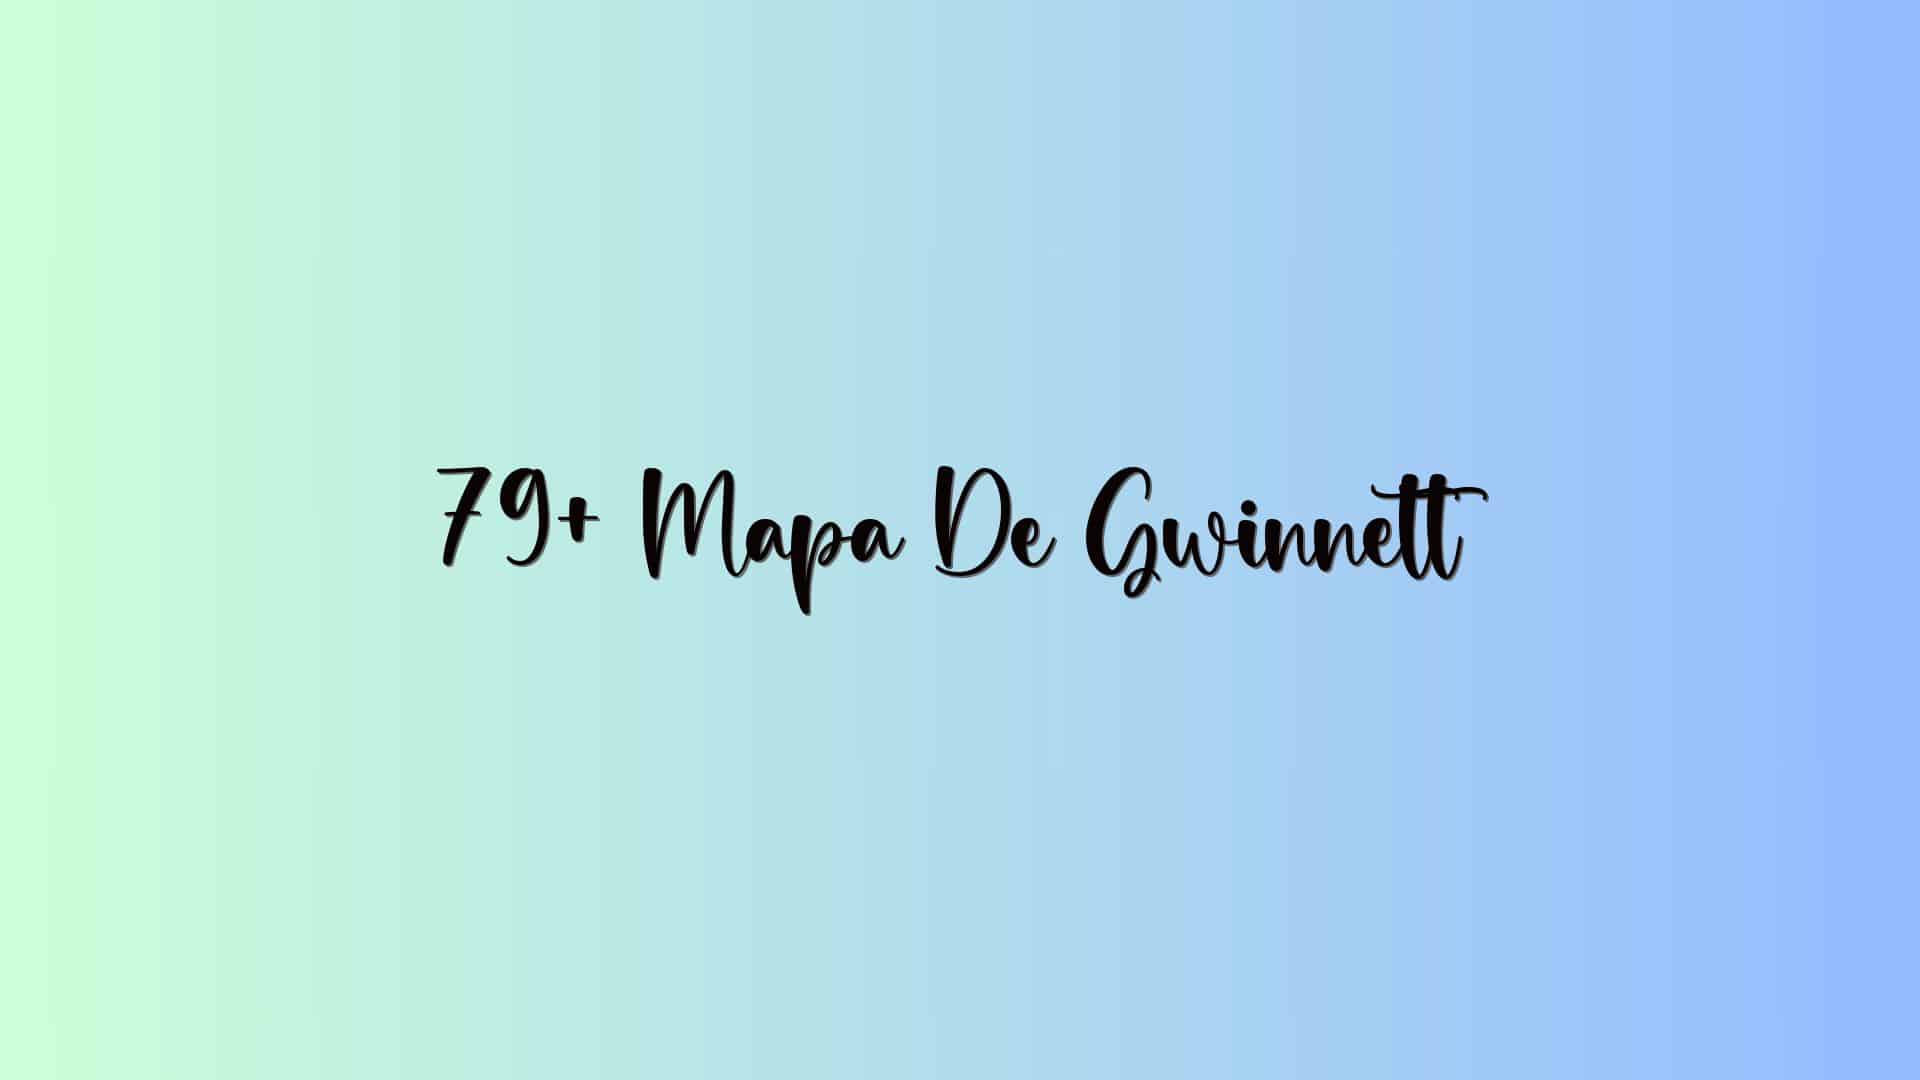 79+ Mapa De Gwinnett